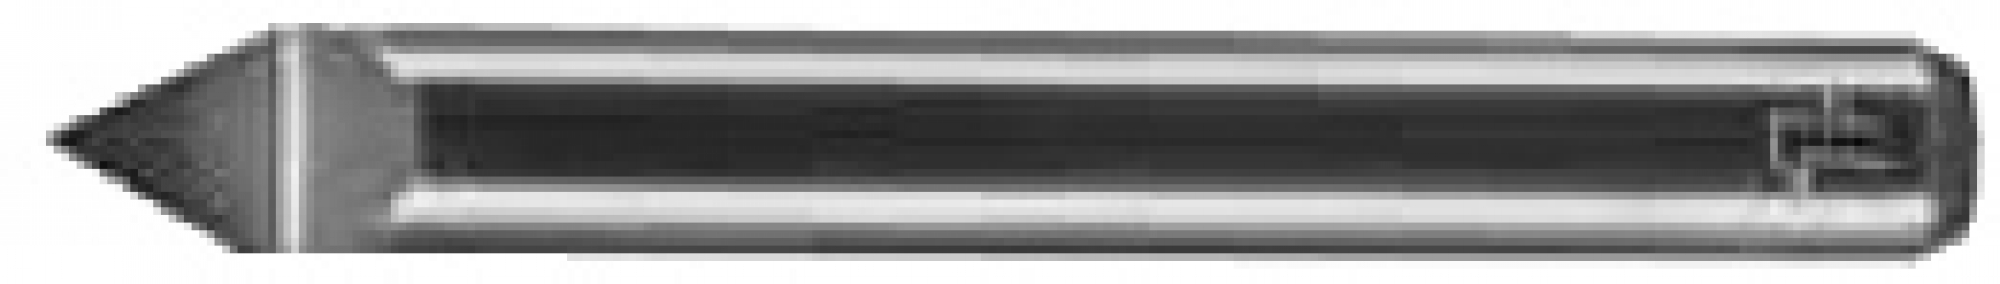 FIRSTATTEC Graver 1-Flute Ø0.1mm 60°, 1/8" Shank